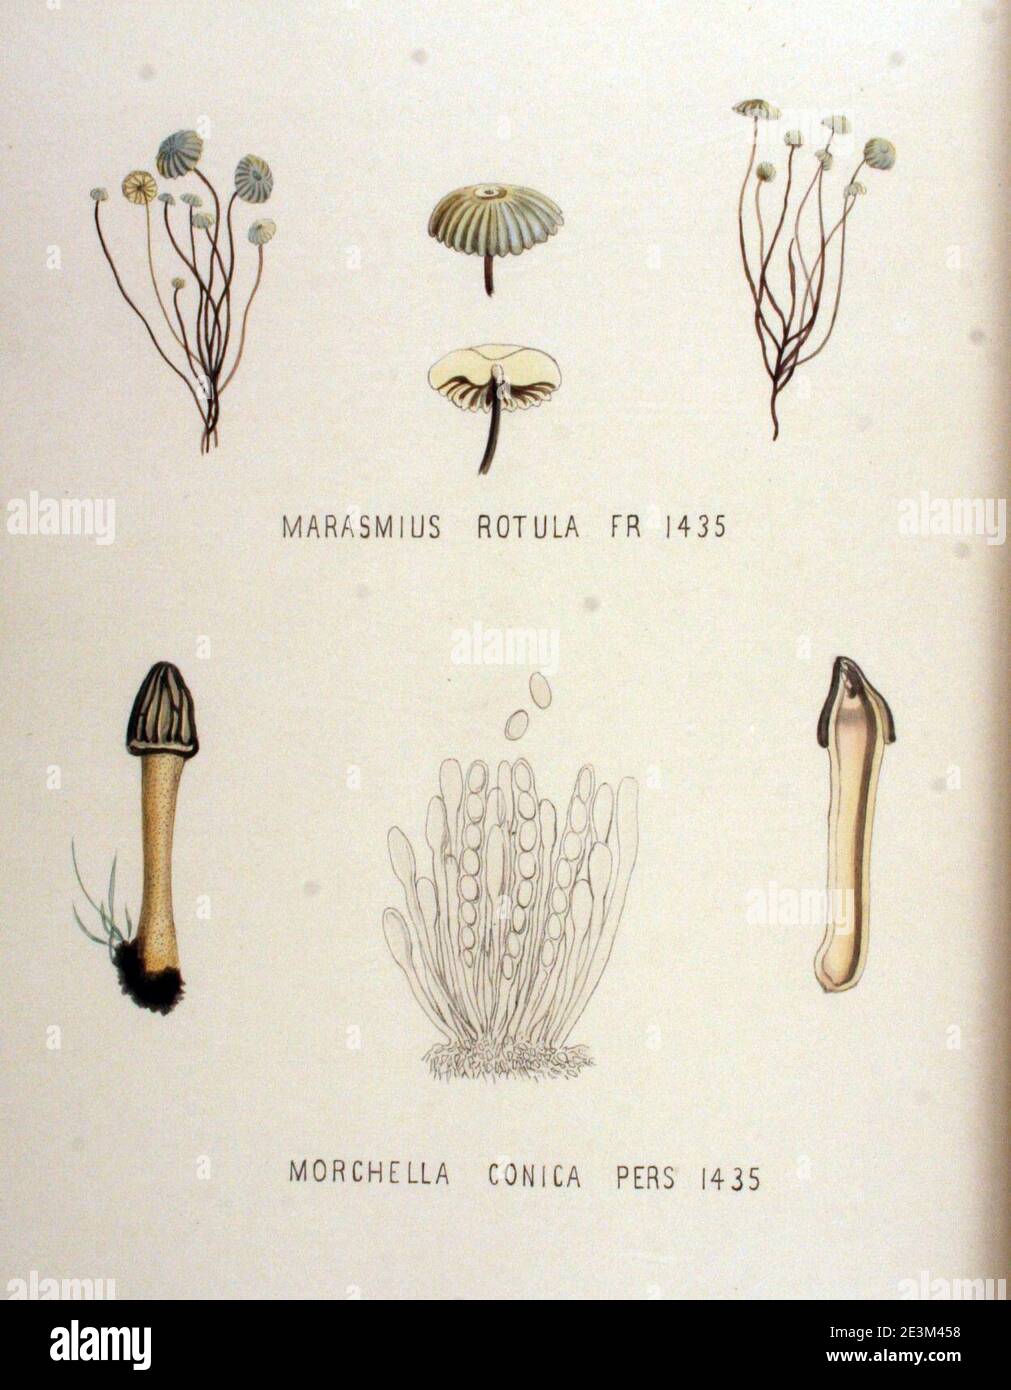 Marasmius rotula   Flora Batava   Volume v18. Stock Photo